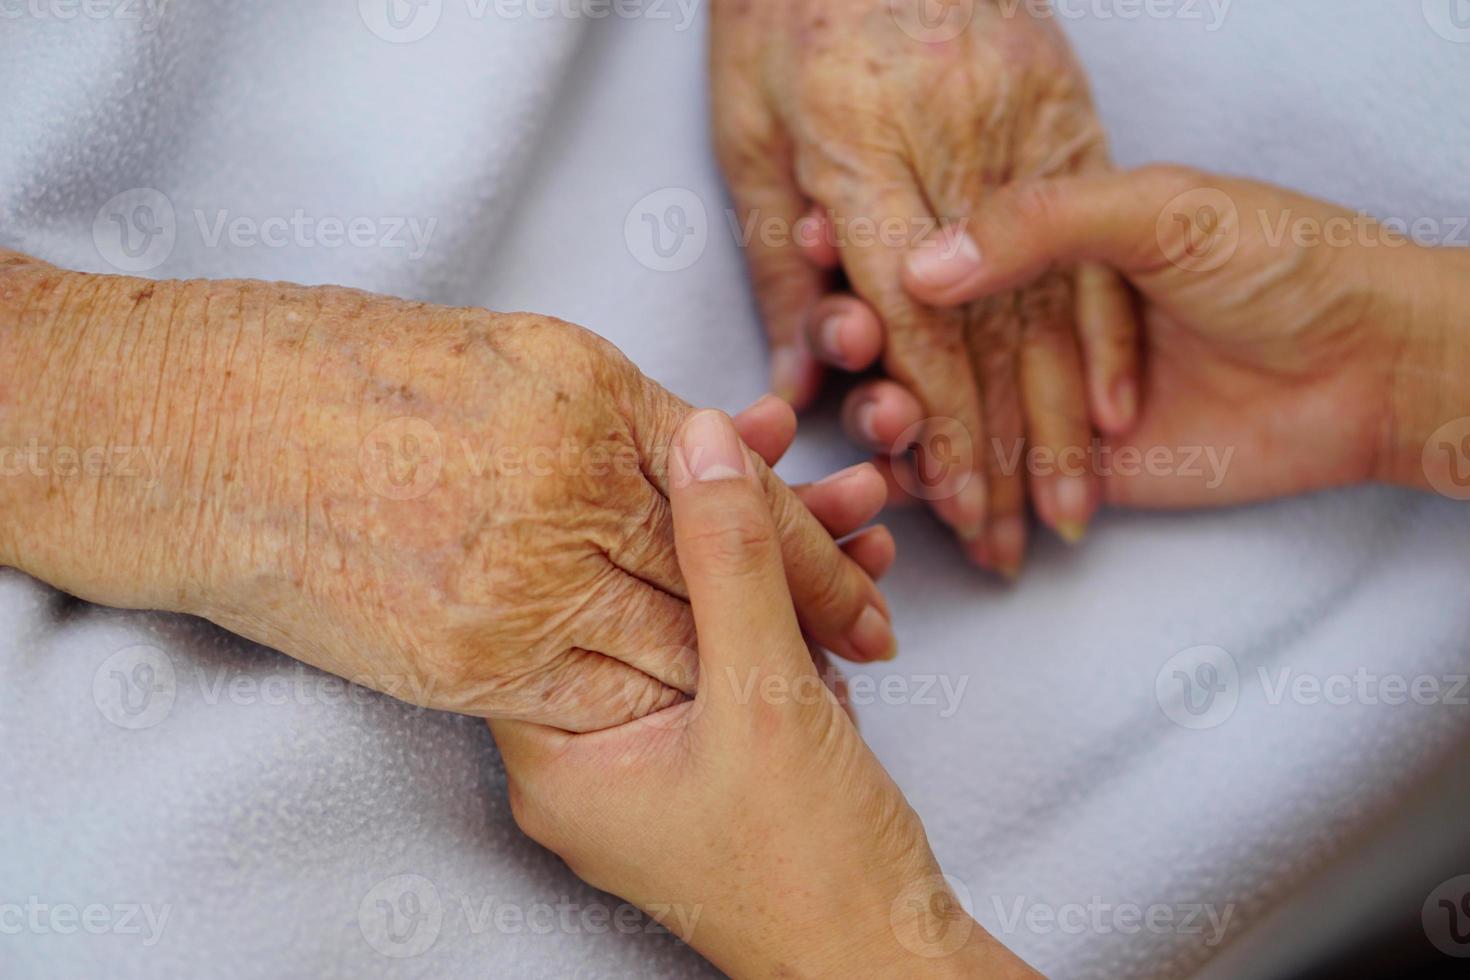 aanraken of hand in hand senior of oudere oude vrouw op een blauwe doek met liefde, zorg, aanmoediging en empathie. foto